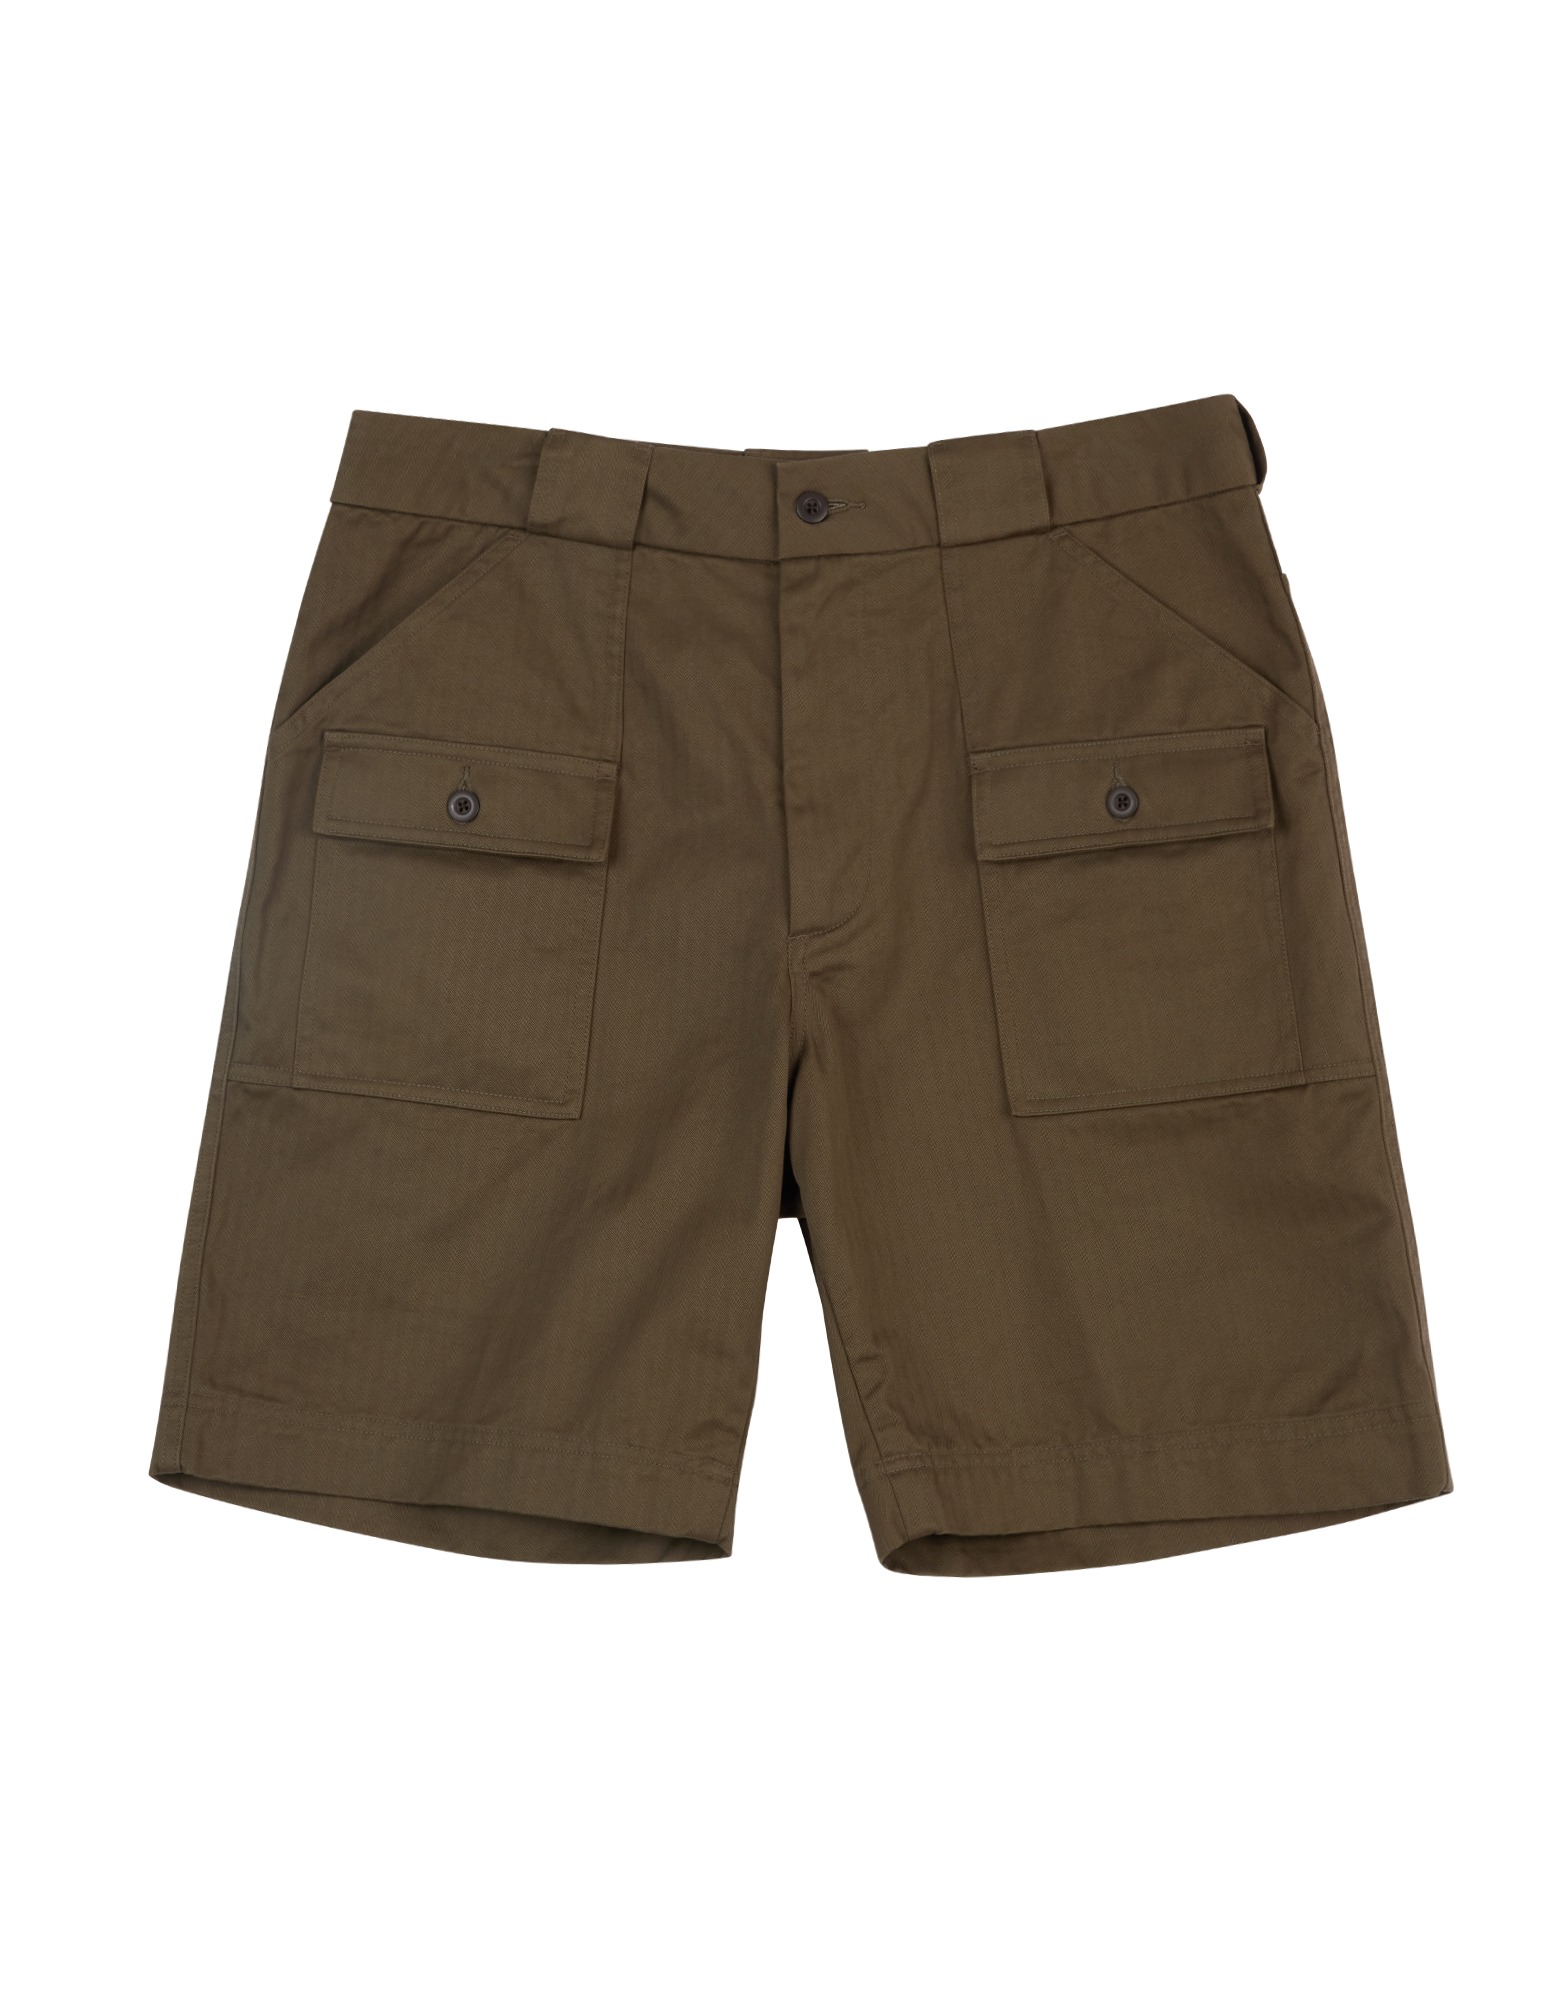 LSC Brush Shorts (Olive)